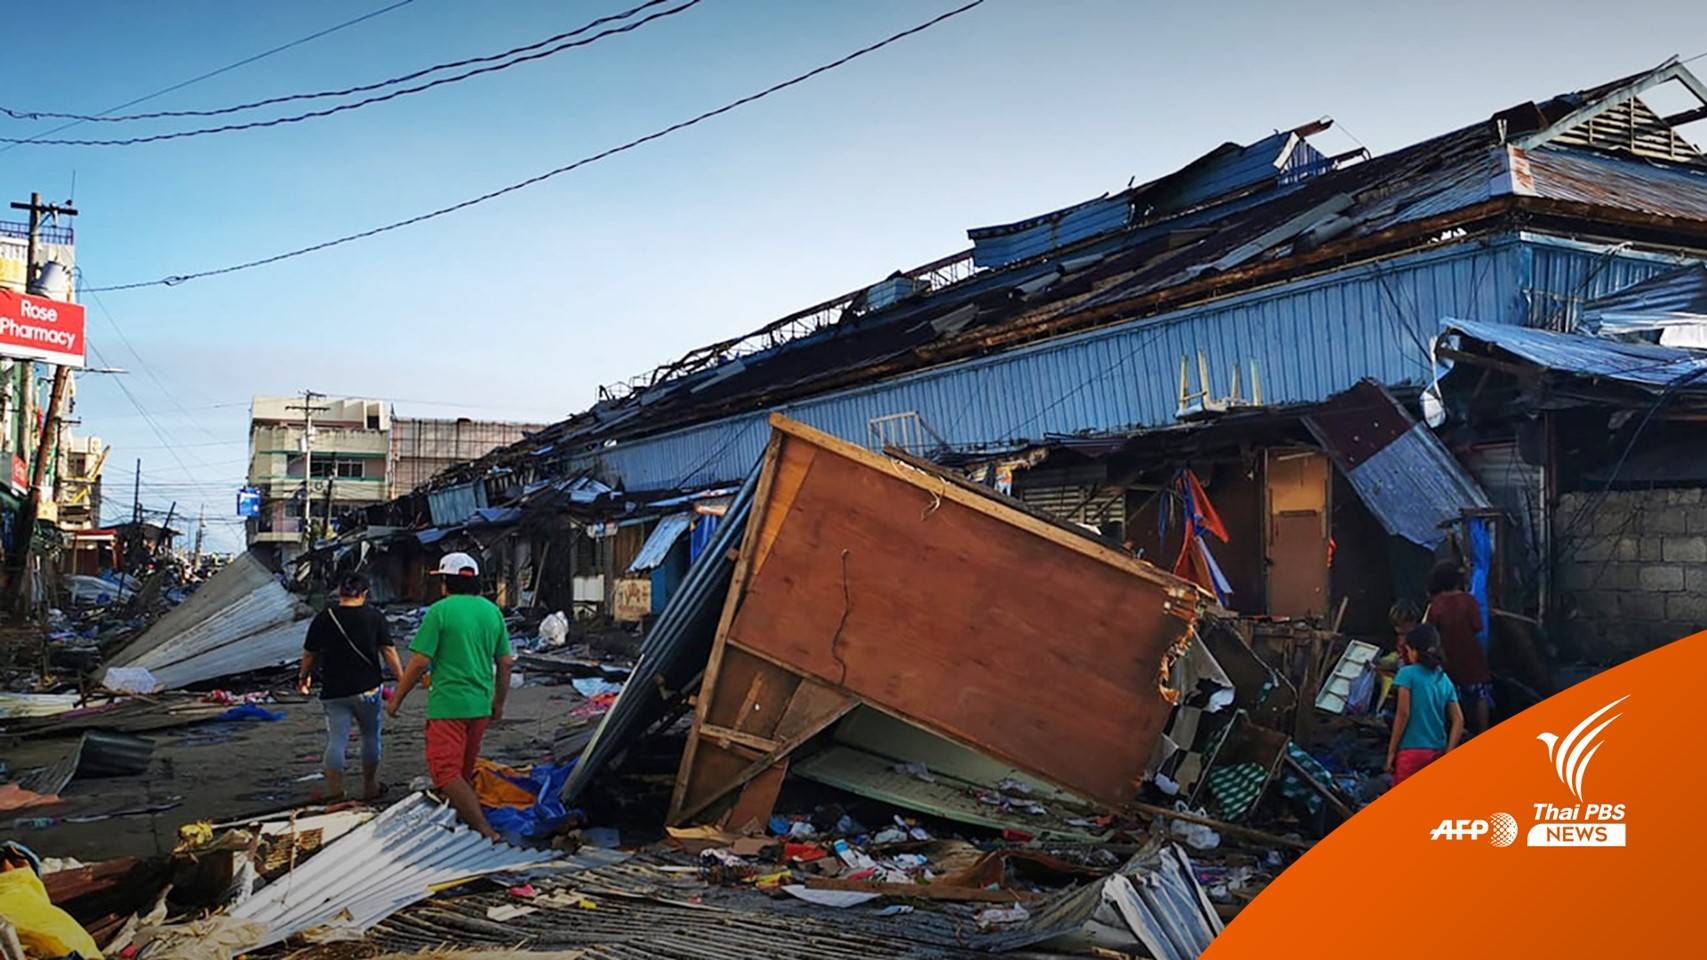 ไต้ฝุ่น "ราอี" คร่าชีวิตชาวฟิลิปปินส์กว่า 200 คน สูญหาย 52 คน